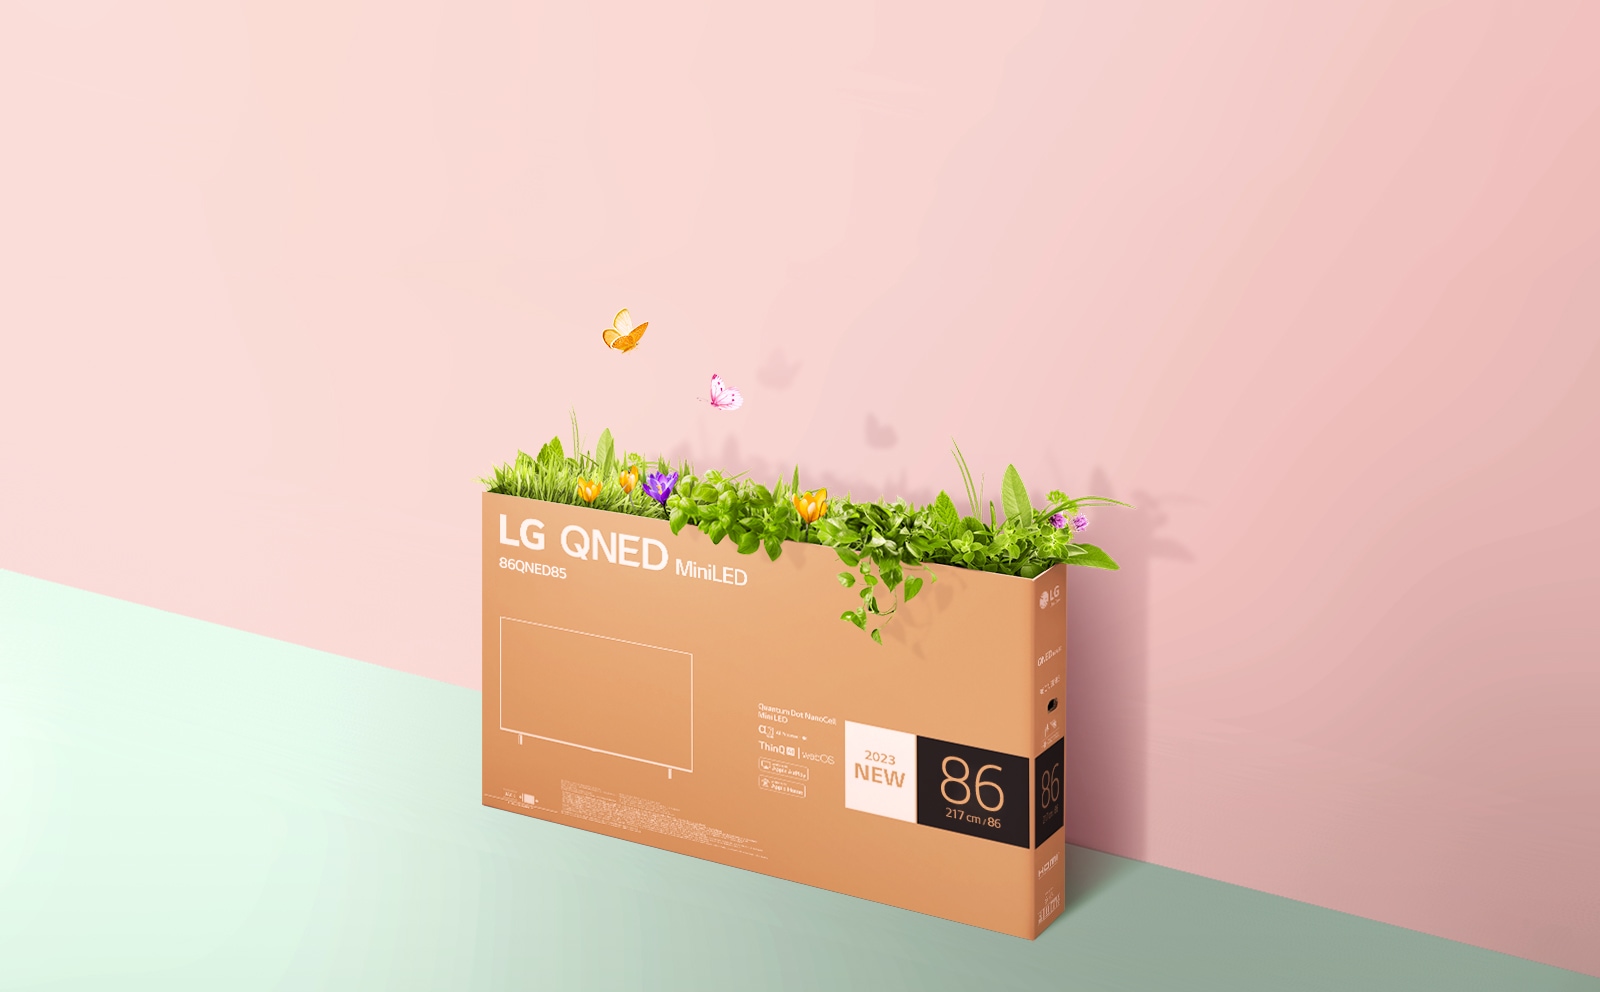 Une boîte d’emballage QNED est placée sur un fond rose et vert, avec de l’herbe qui pousse et des papillons qui sortent de la boîte. 